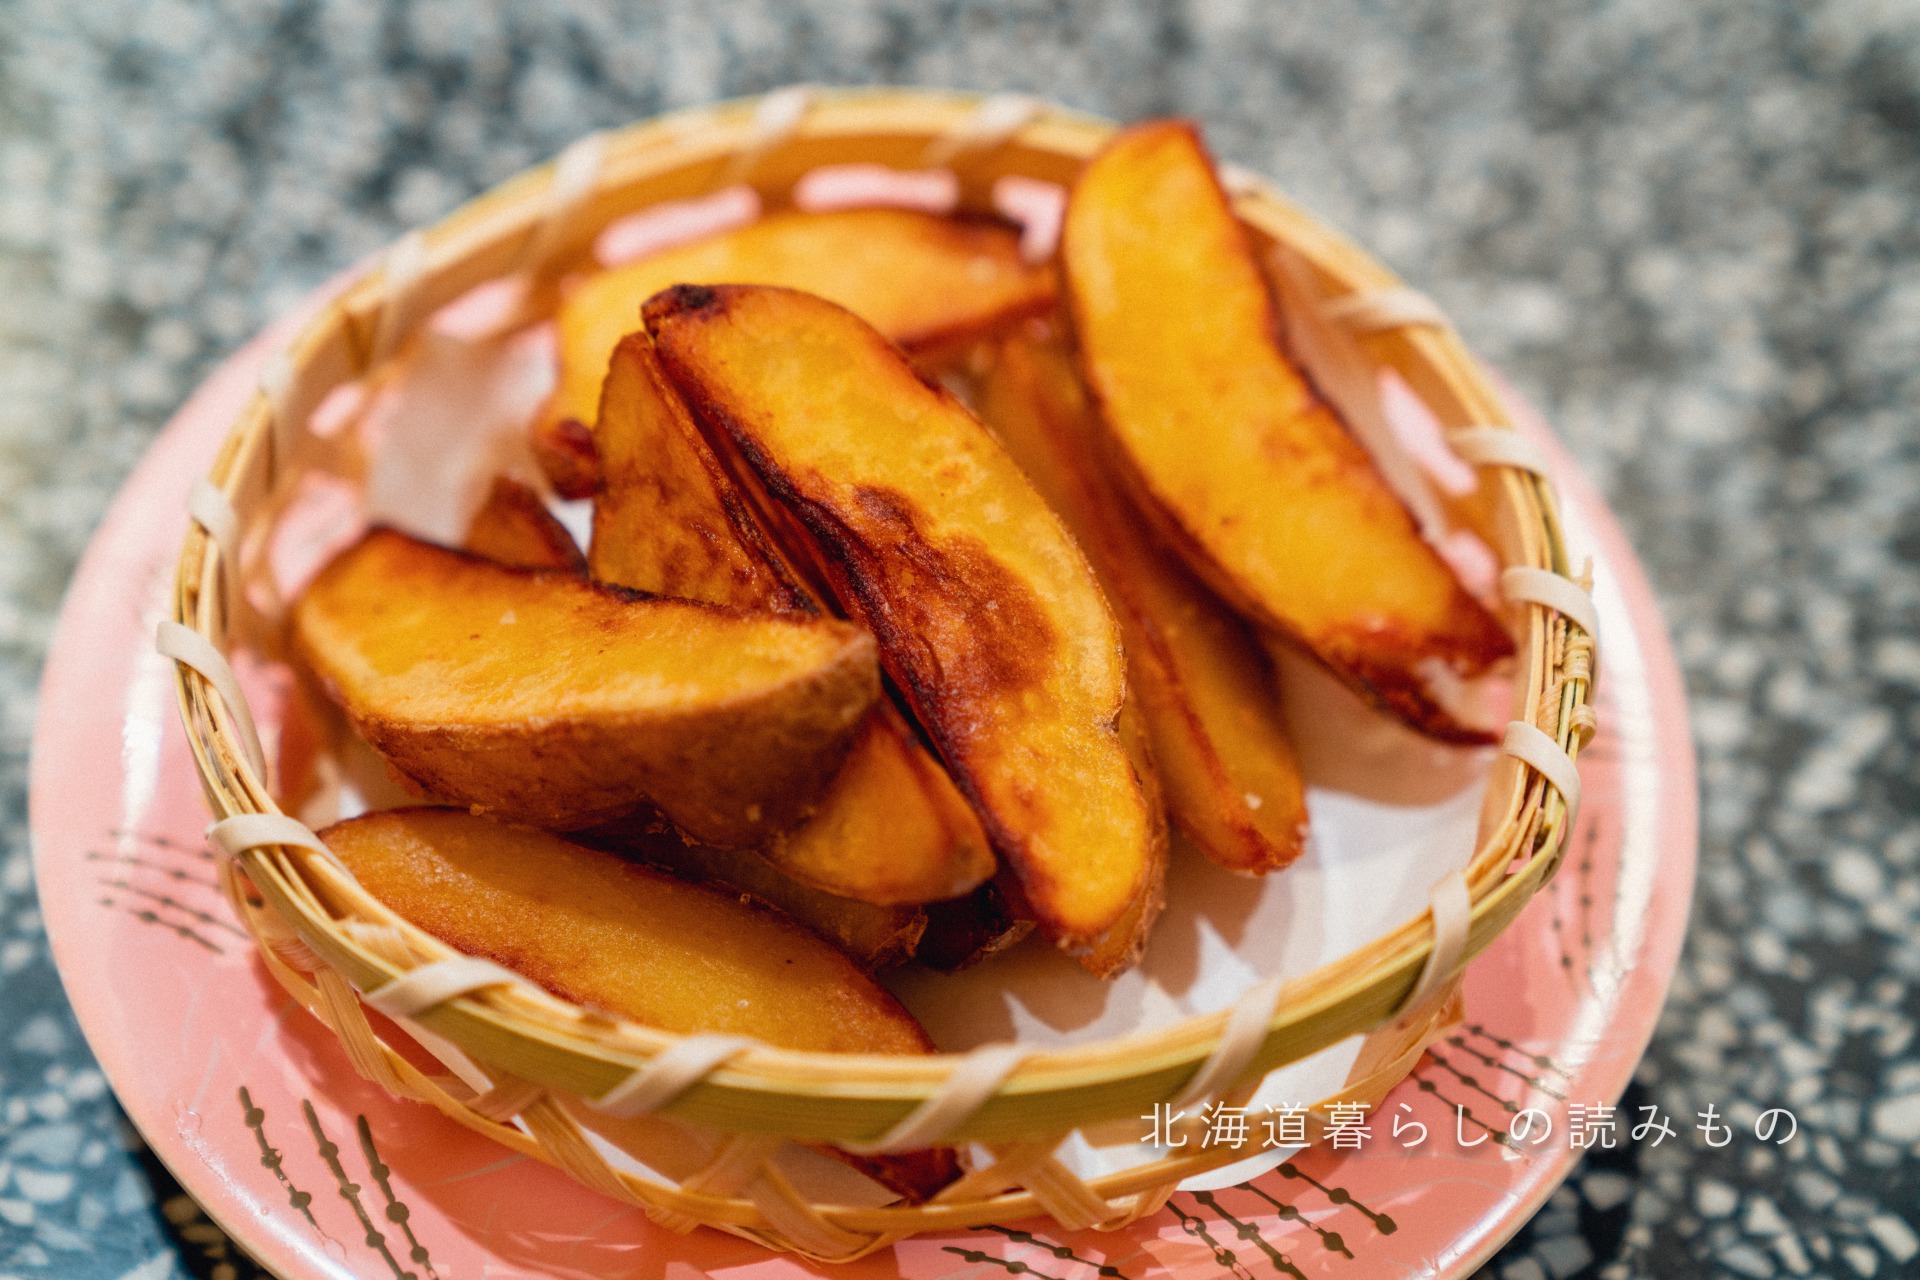 迴轉壽司根室花丸的菜單上的「French Fries with Hokkaido Inca no Mezame Potato」